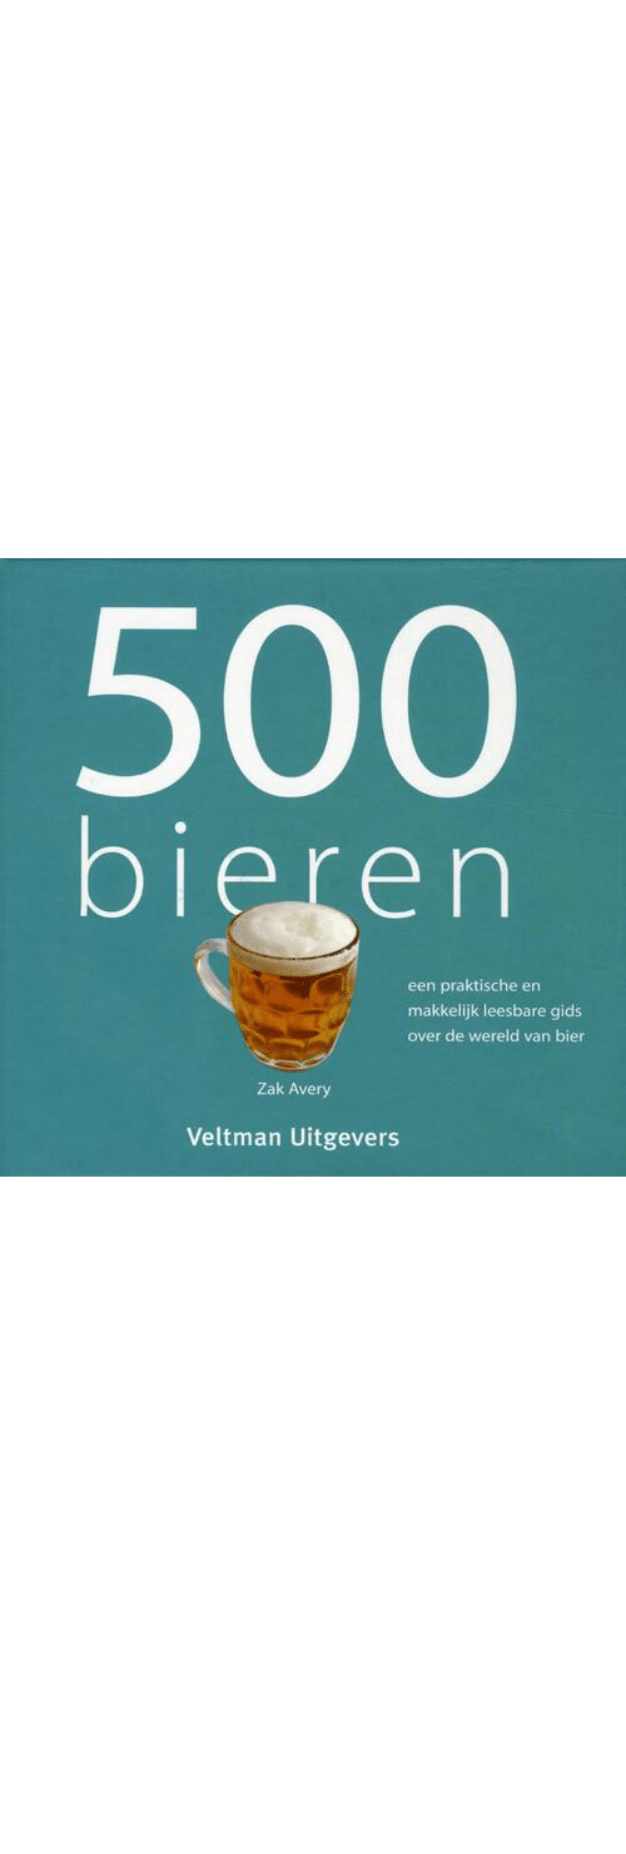 500 bieren boek